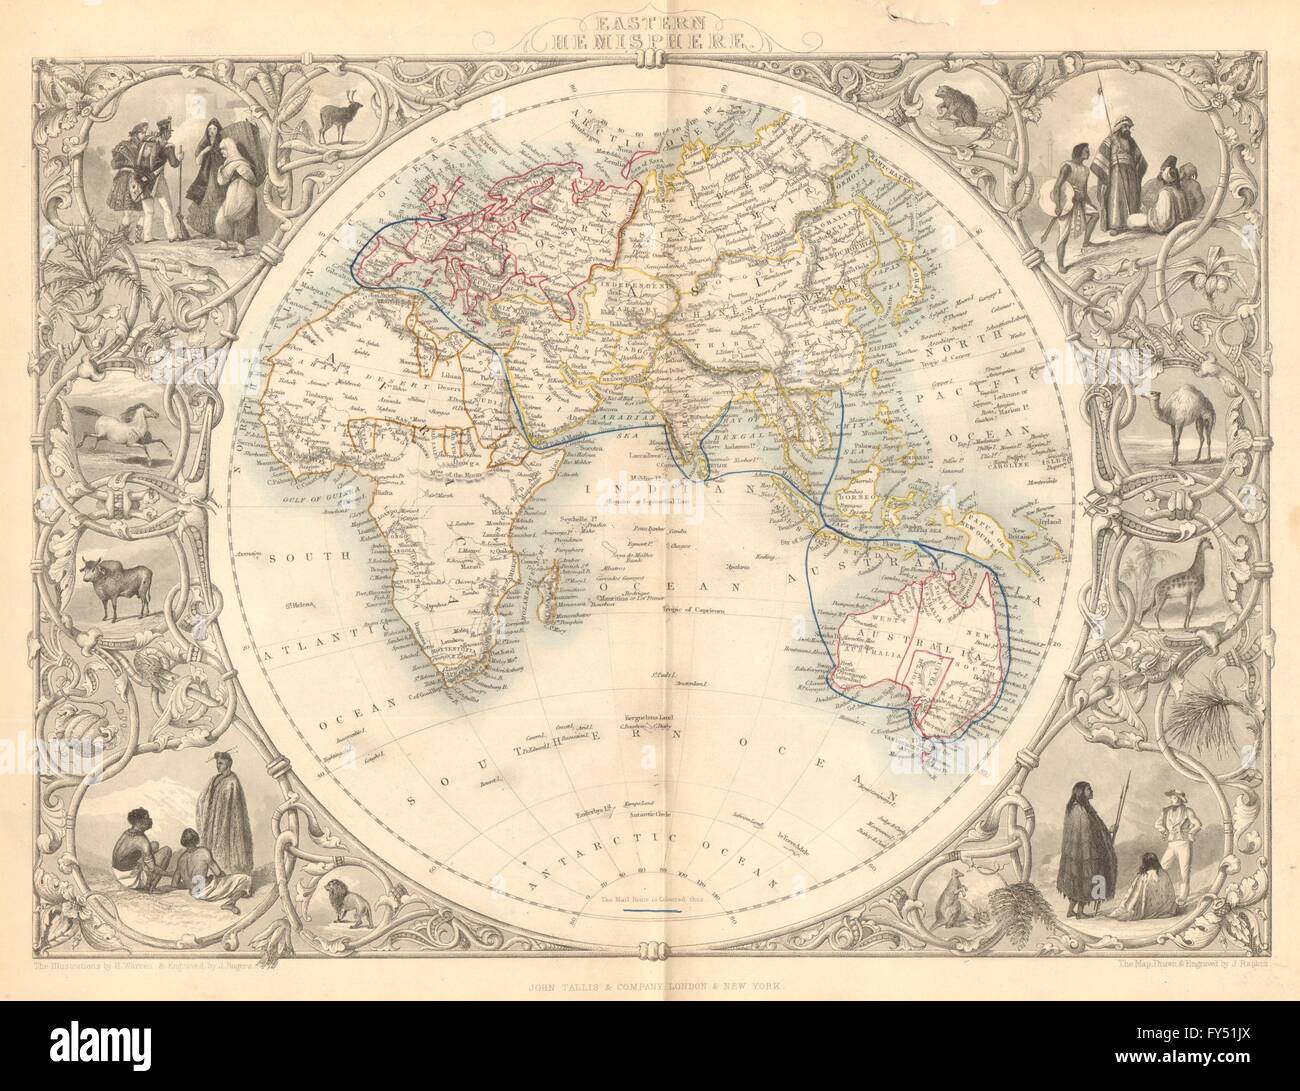 Hémisphère oriental. Mail route de colonies britanniques. Asie.TALLIS/RAPKIN, 1849 map Banque D'Images